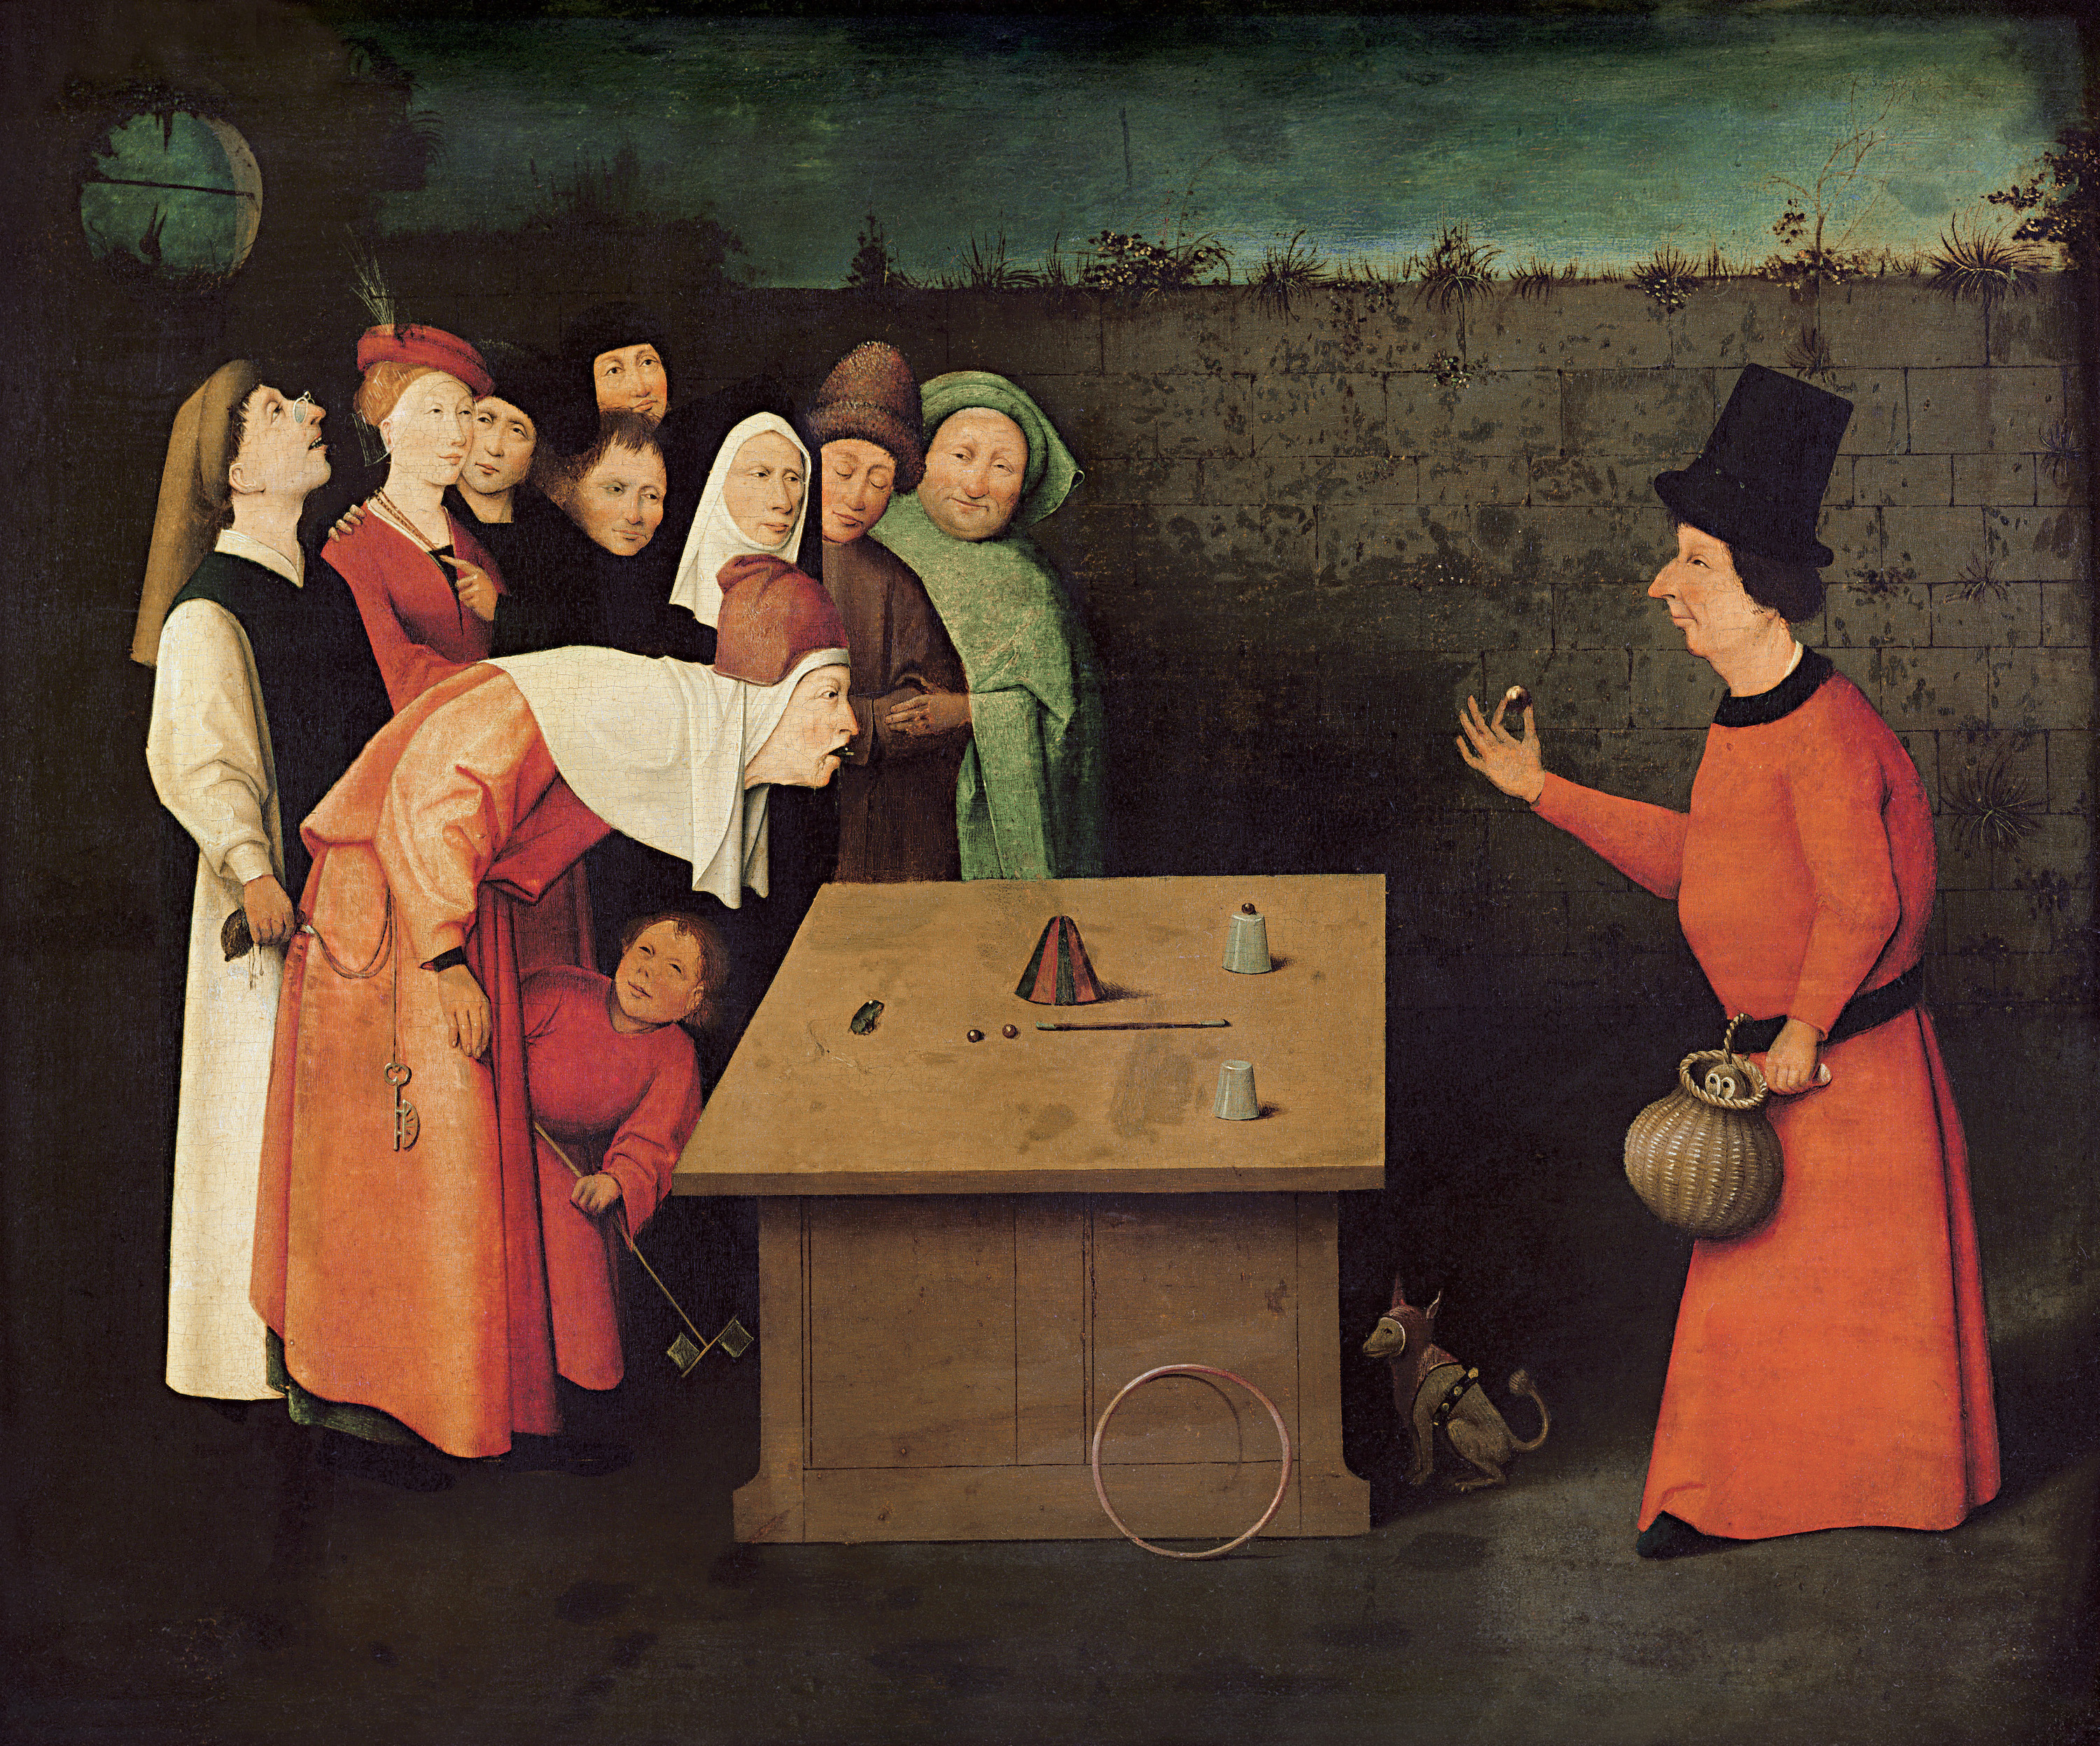 Il Prestigiatore by Hieronymus Bosch - 1496 - 1516 - 53 x 65 cm 